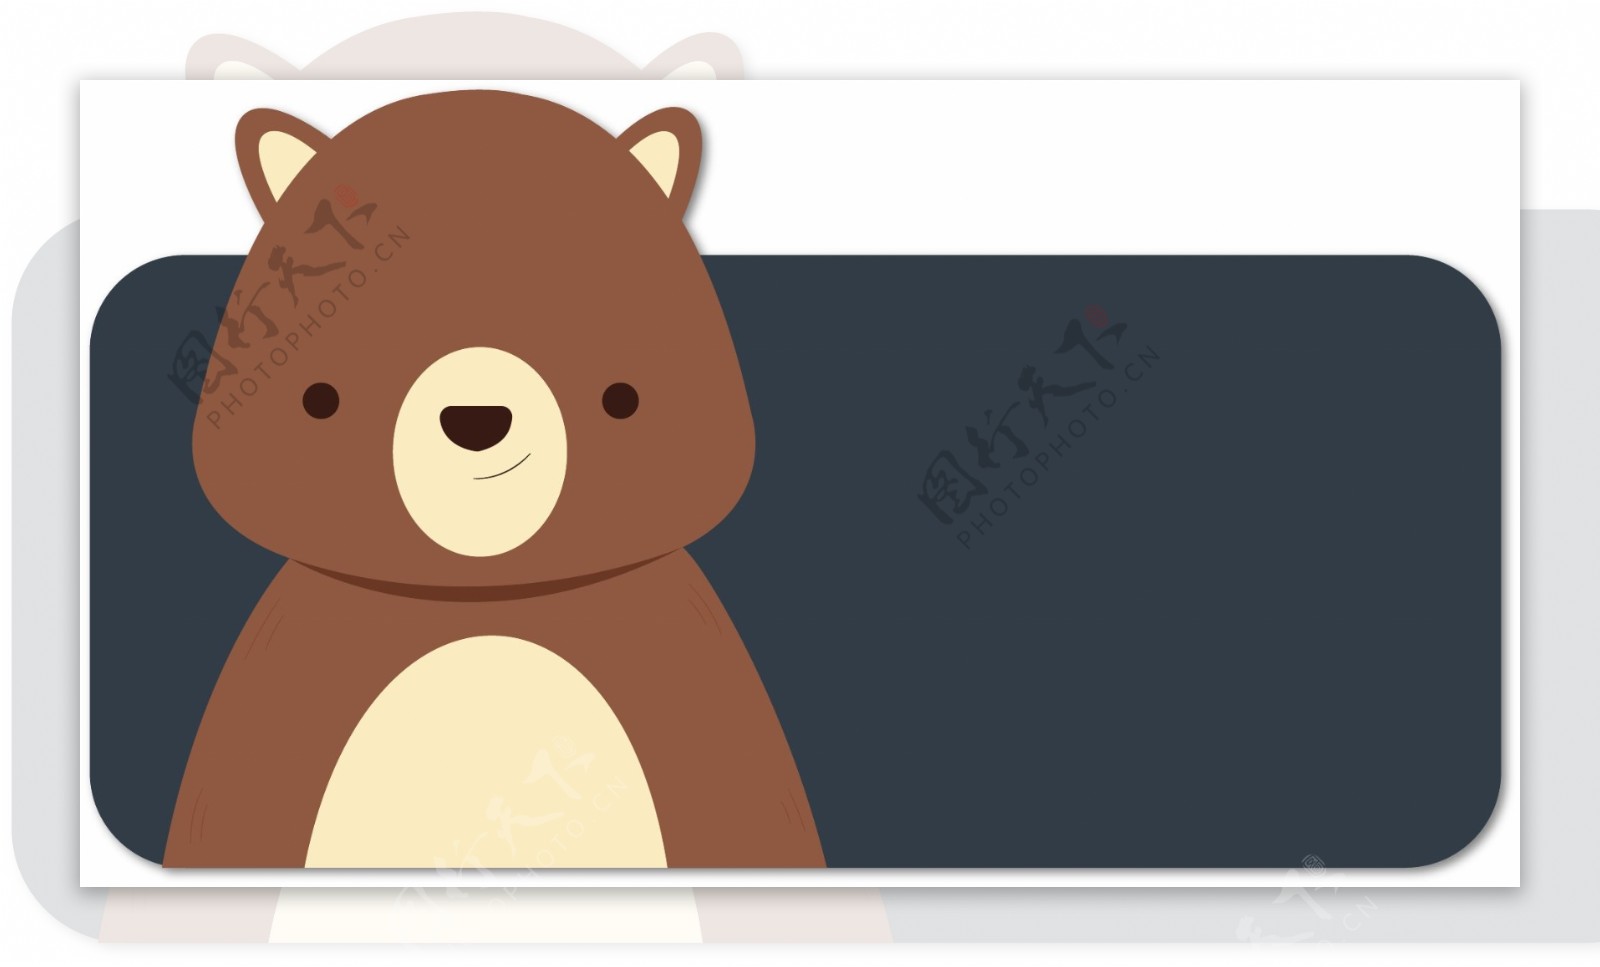 可爱动物小熊装饰标题边框